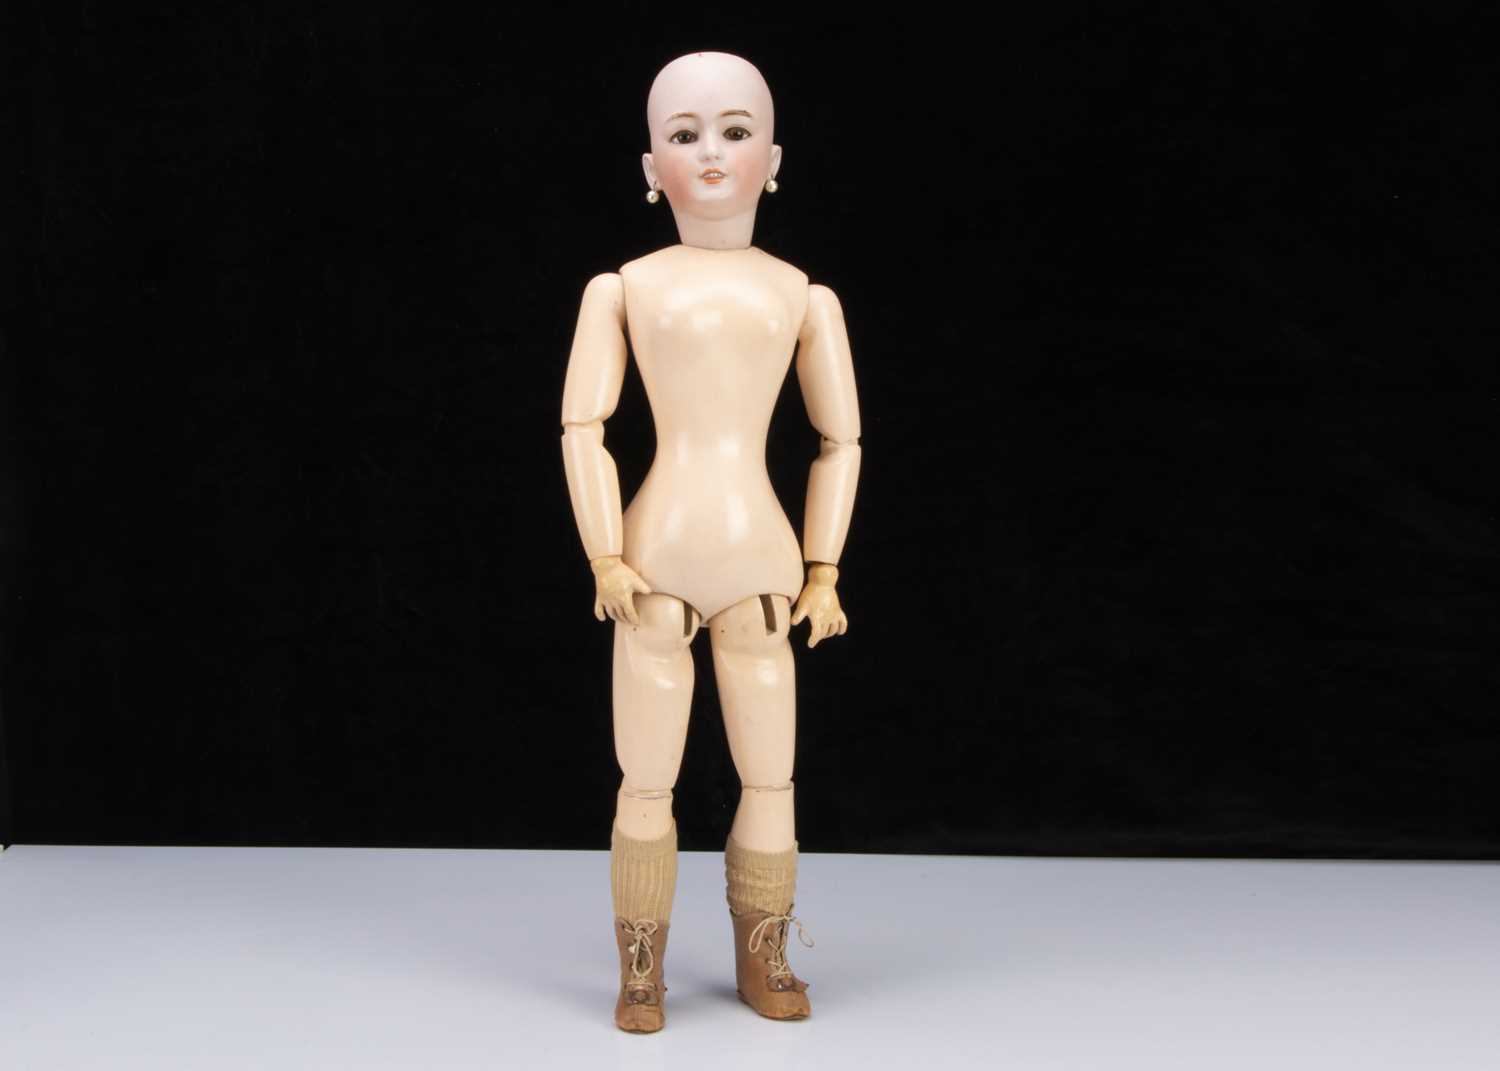 A Simon & Halbig 1159 for Jumeau lady doll,